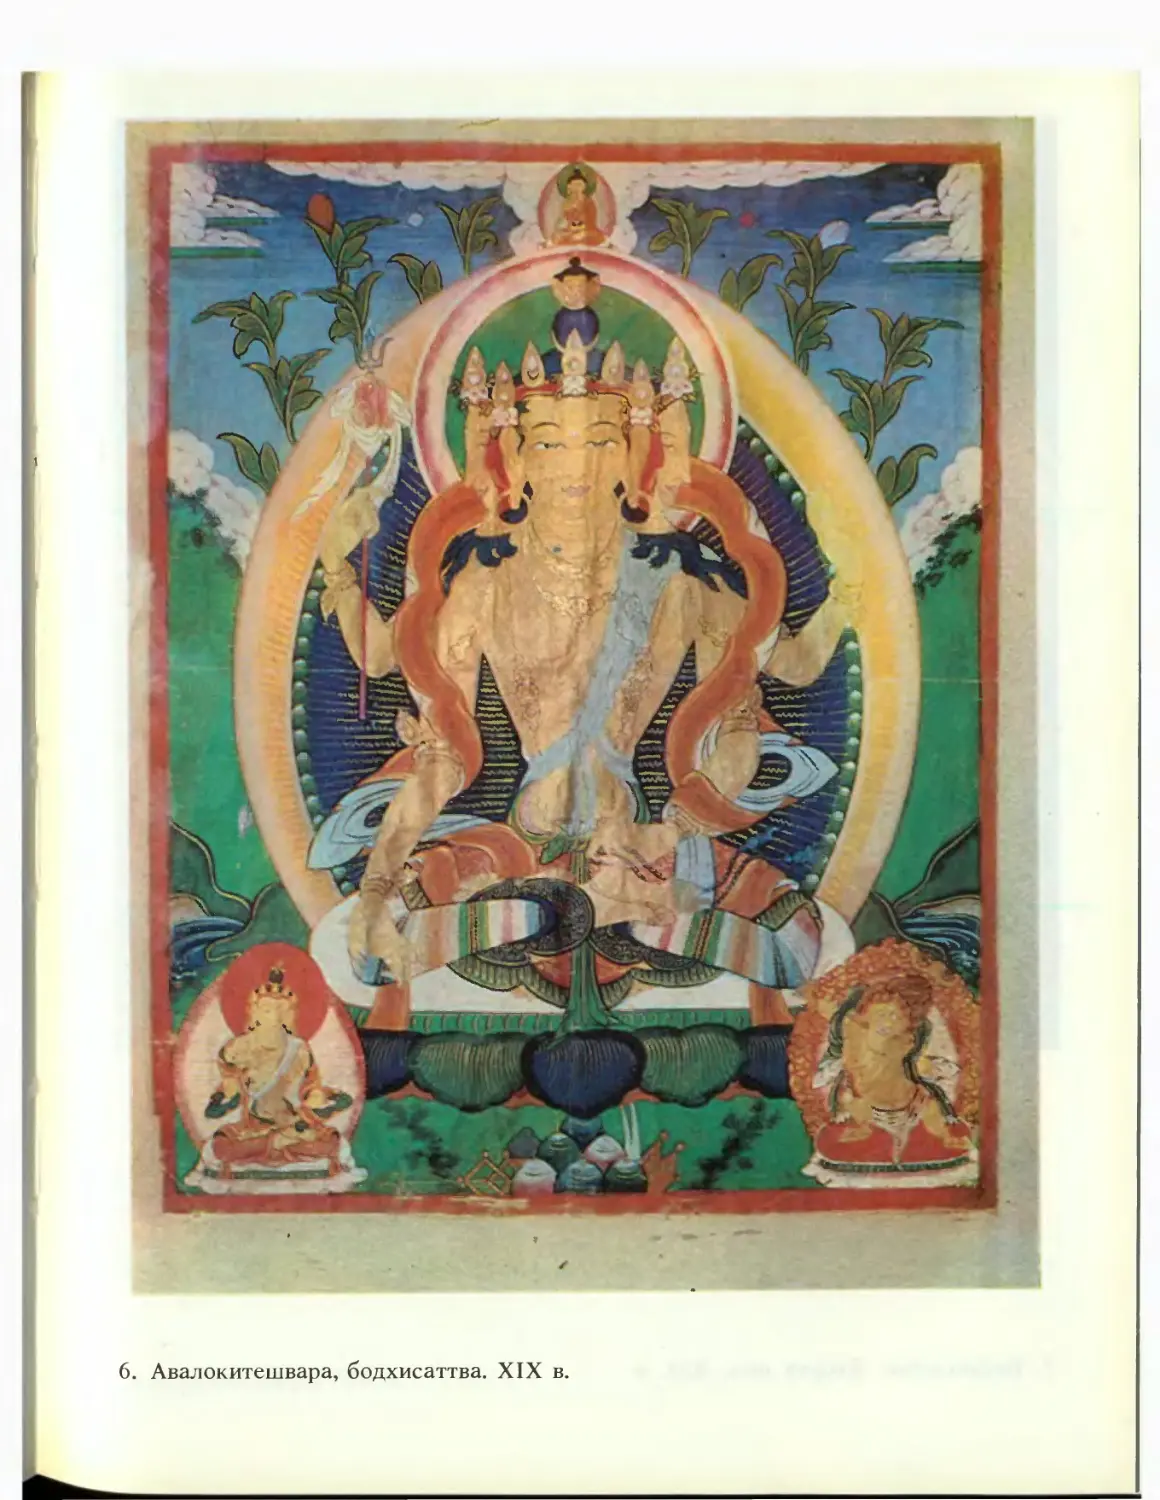 6. Авалокитешвара, бодхисаттва. XIX в.